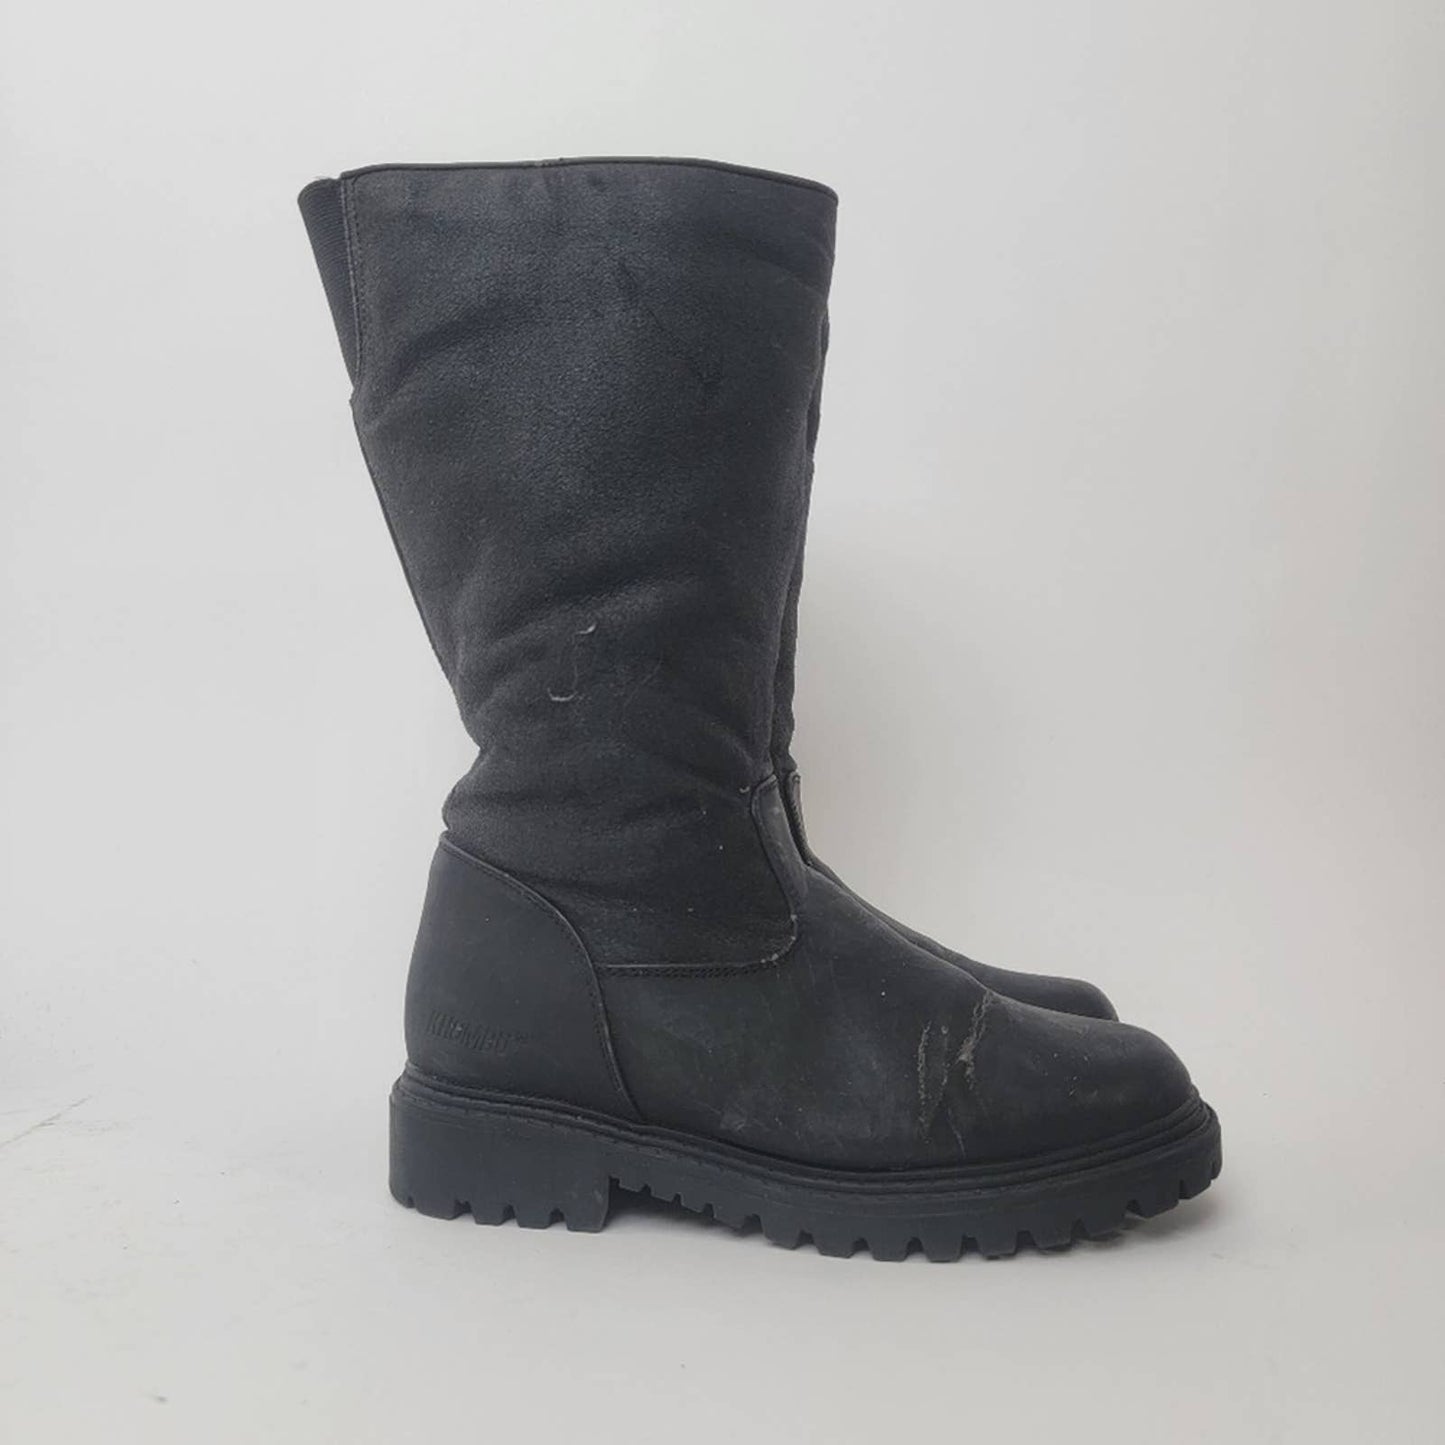 Khombu Black Snow Boots - 6